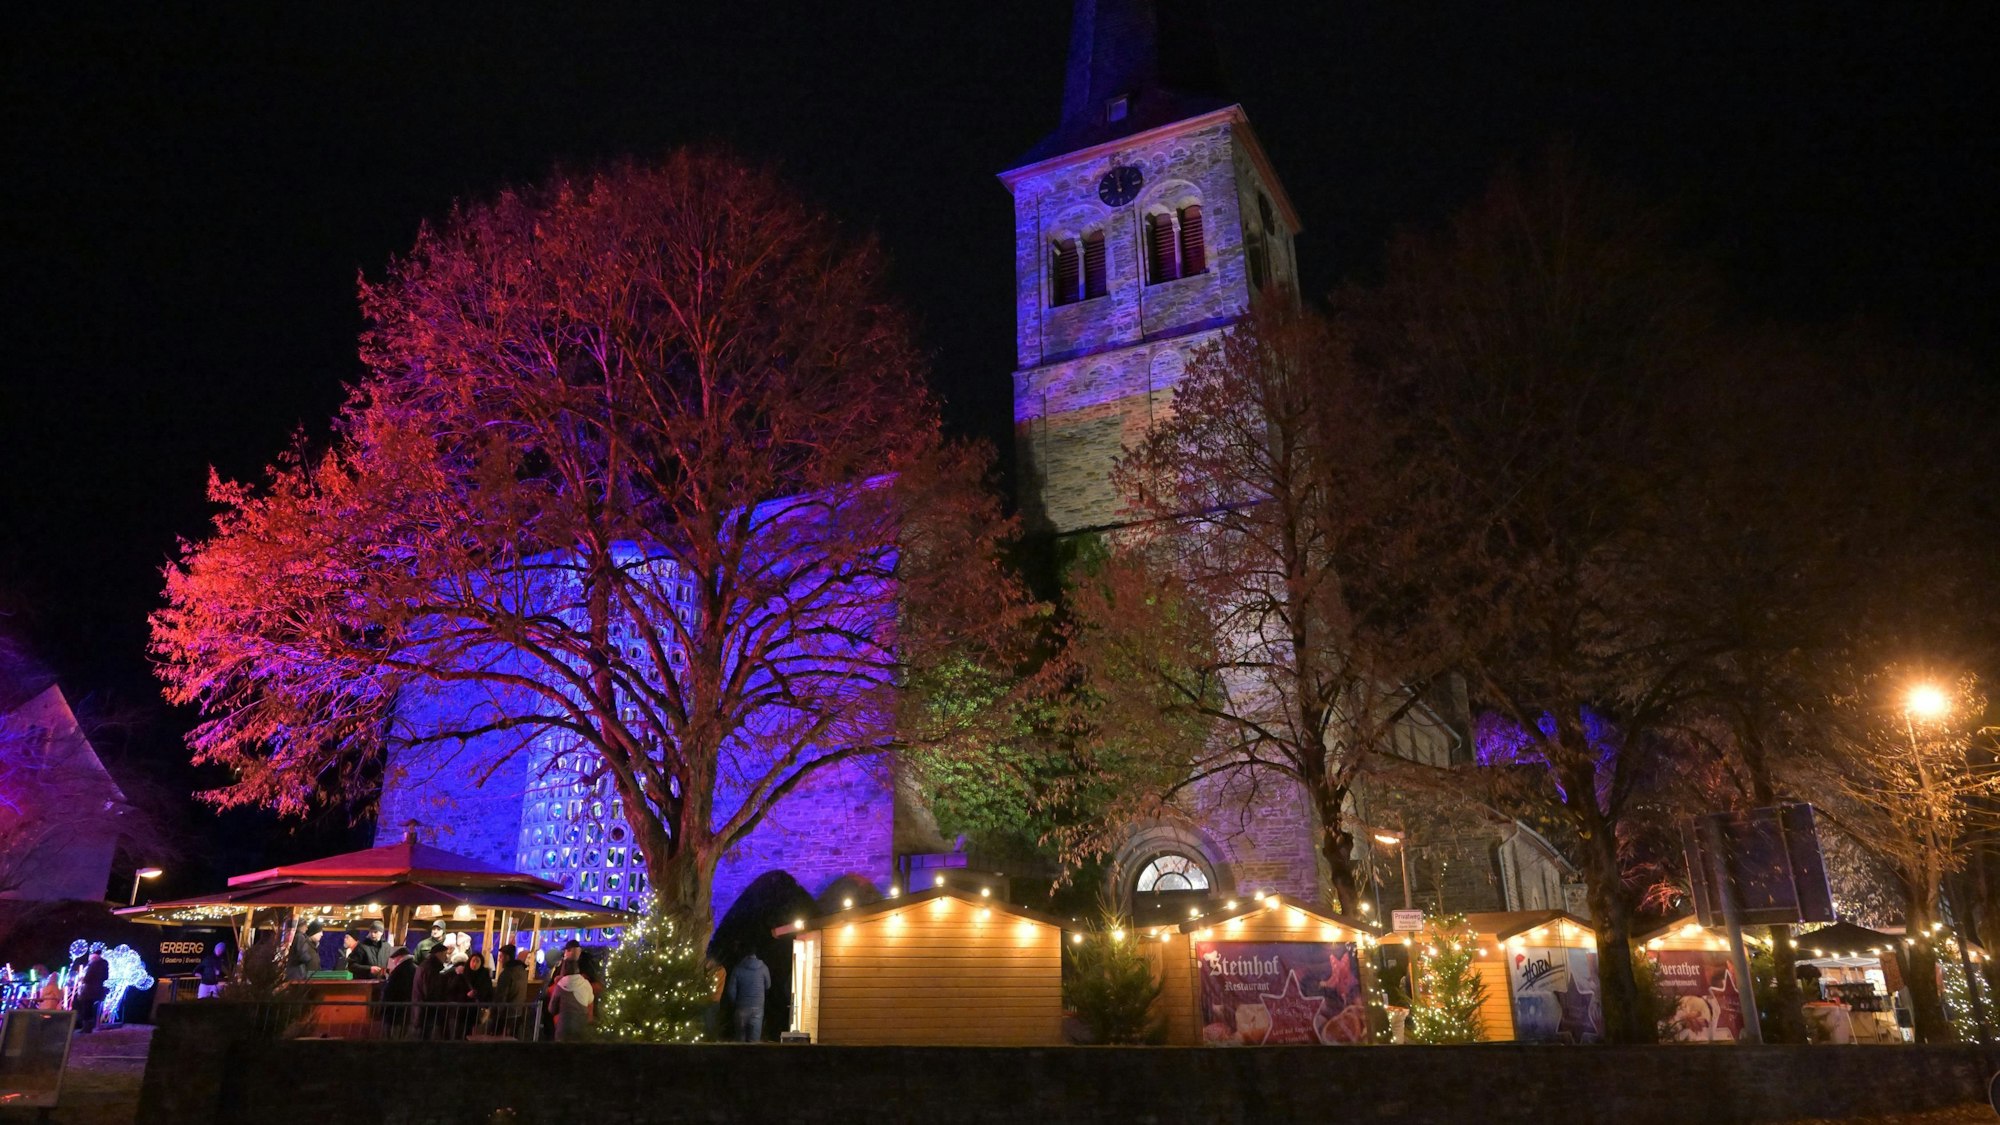 Weihnachtsmarkt an St. Walburga Overath. Die Kirche ist illuminiert.